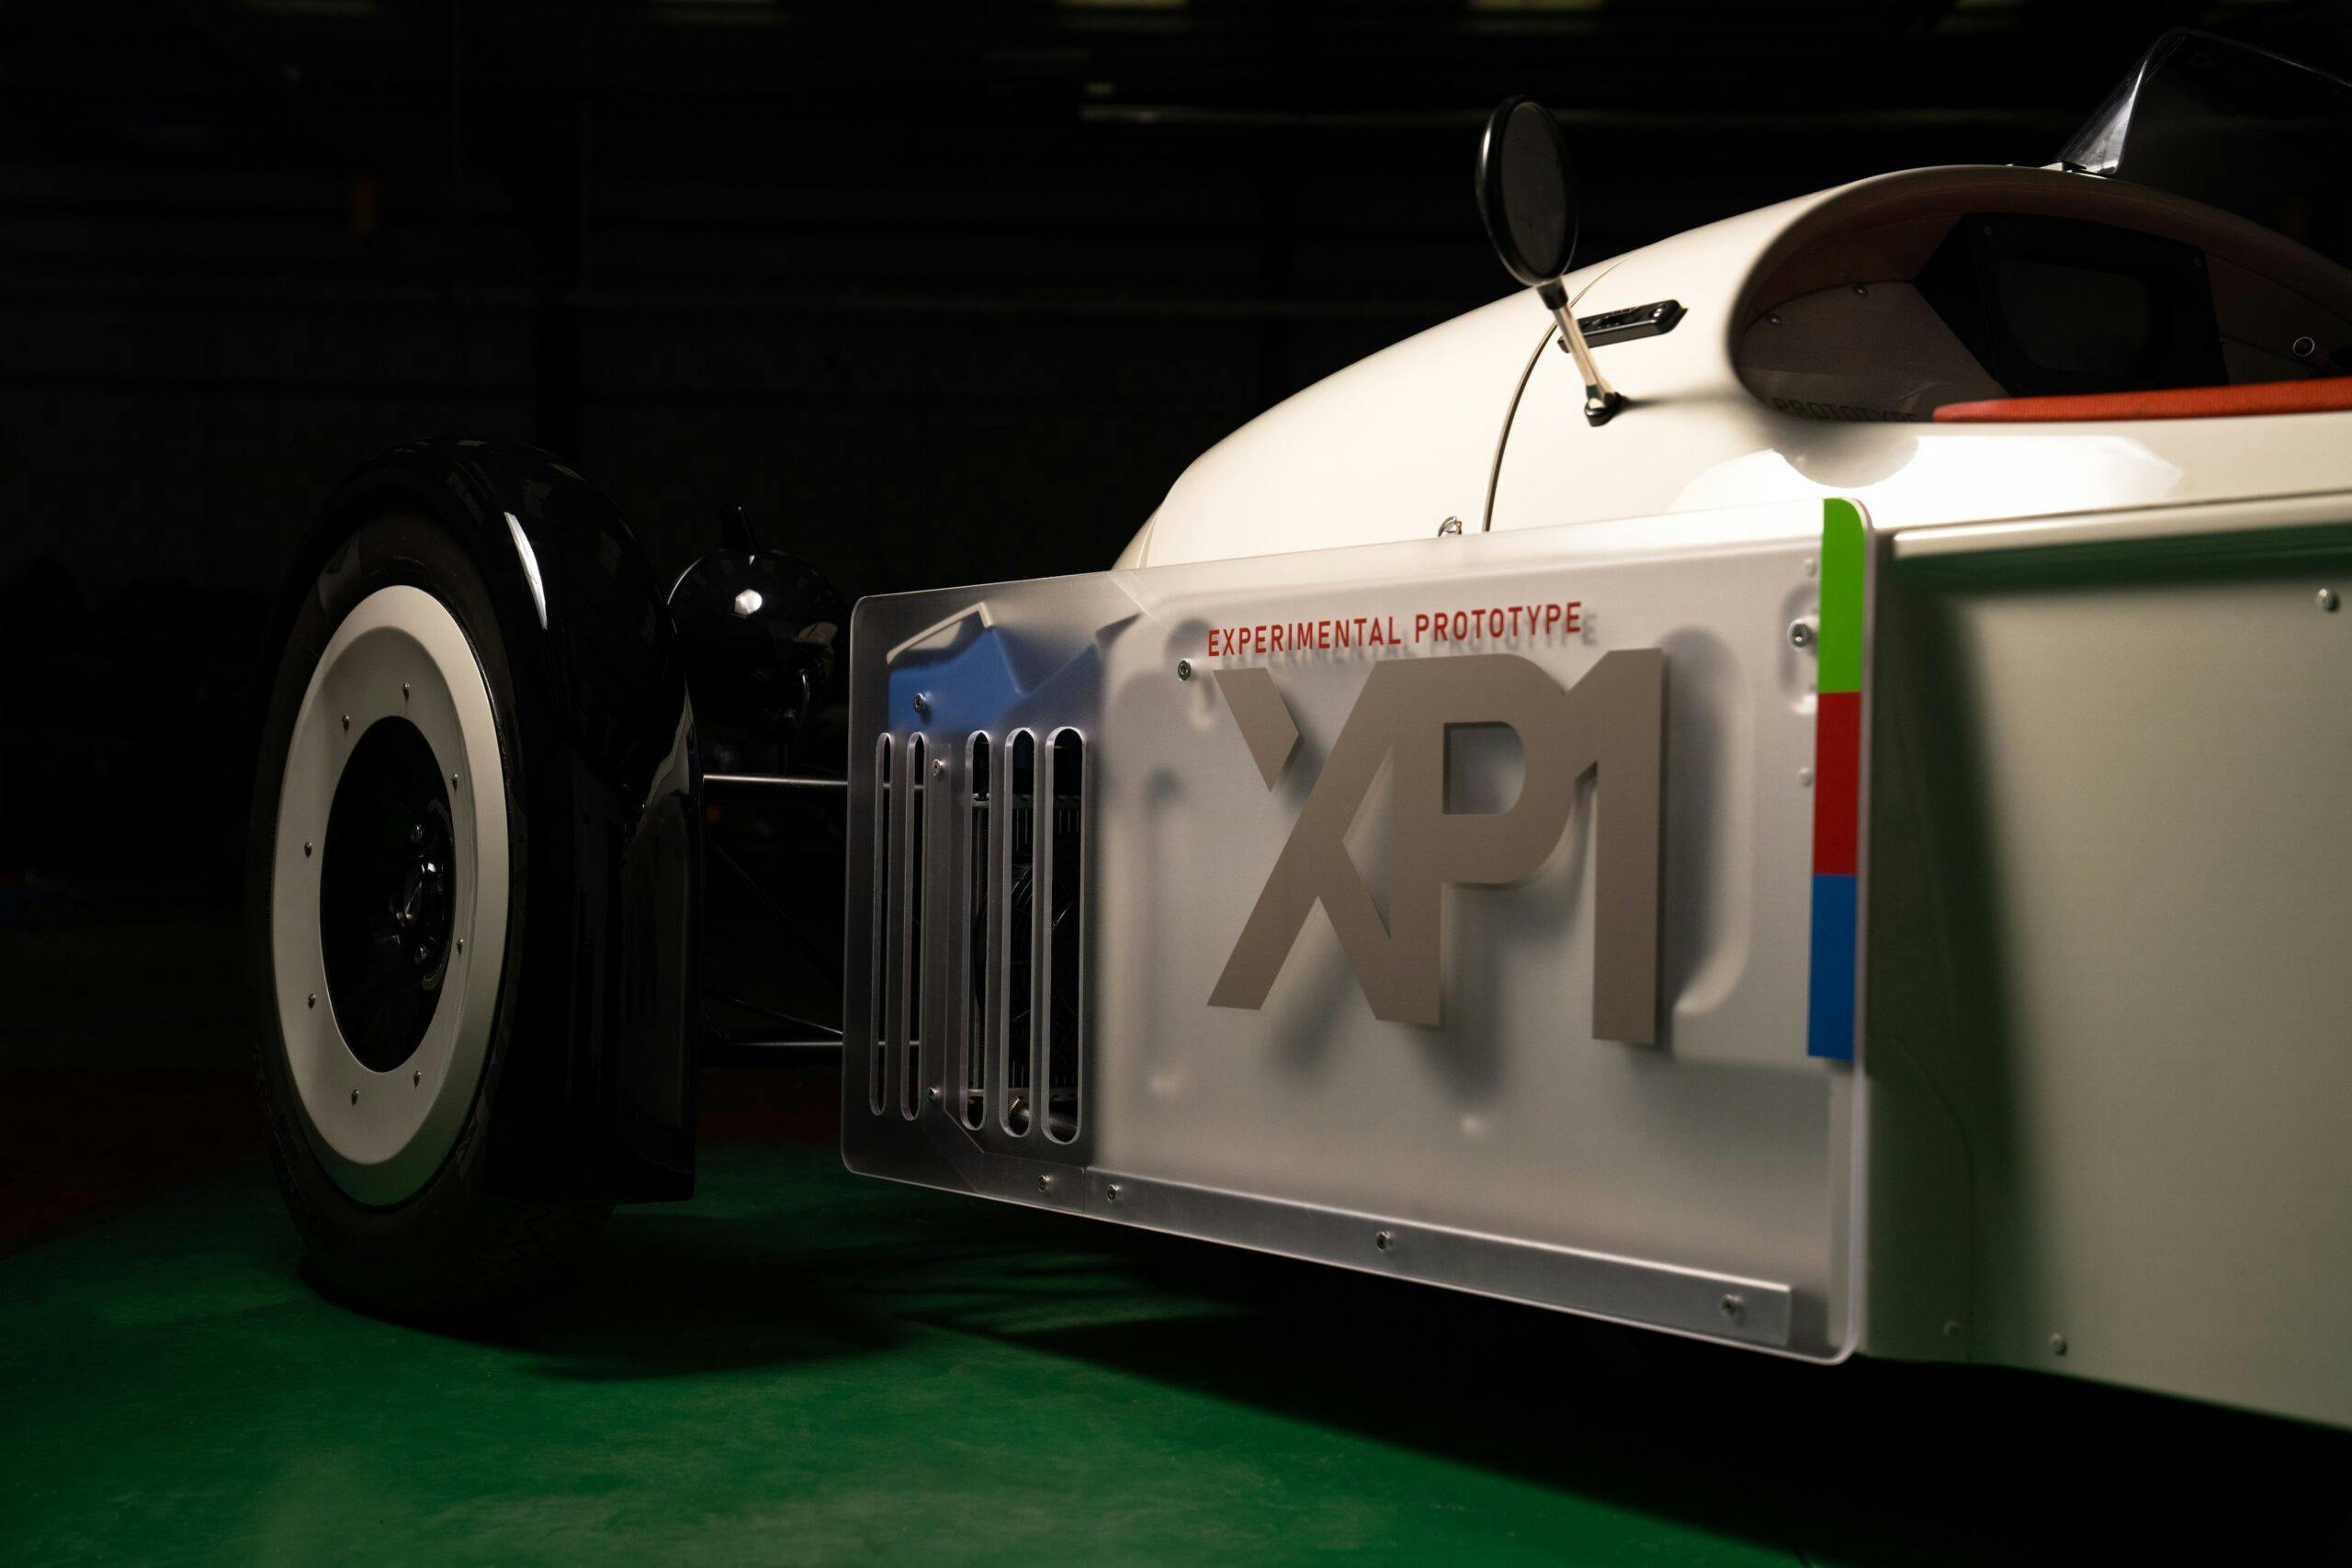 Morgan XP-1 electric 3 wheeler concept prototype ev